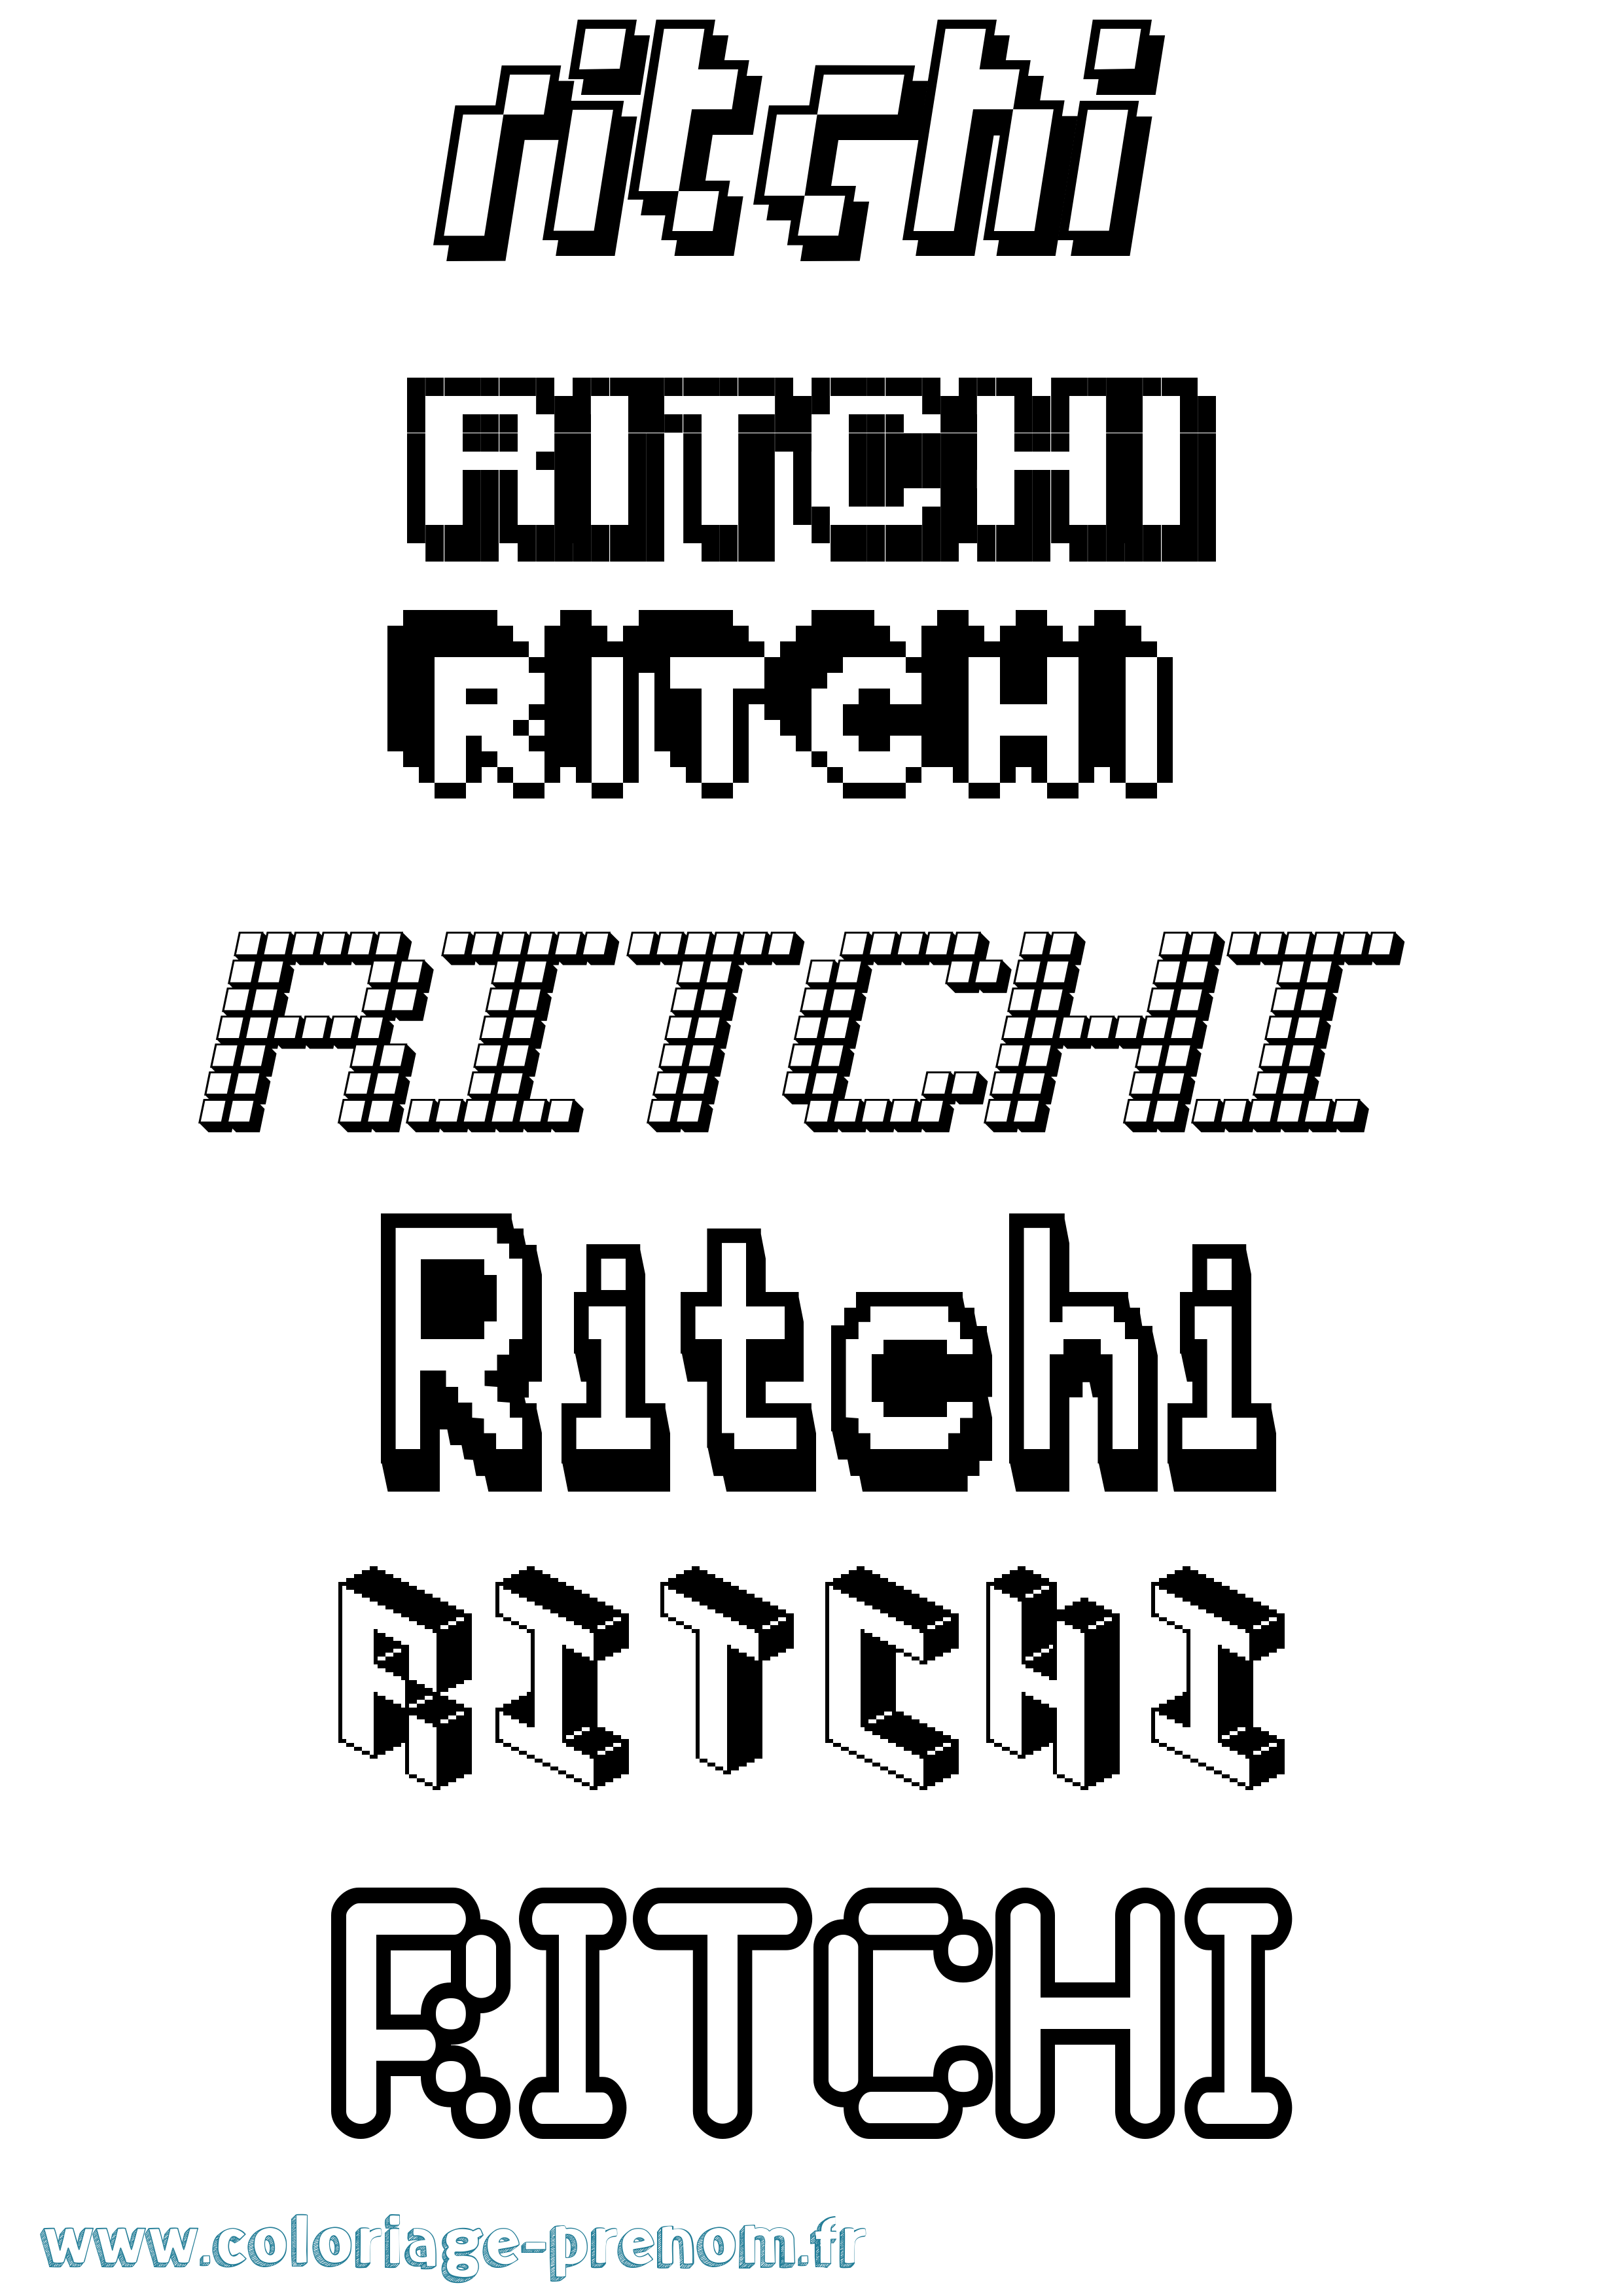 Coloriage prénom Ritchi Pixel